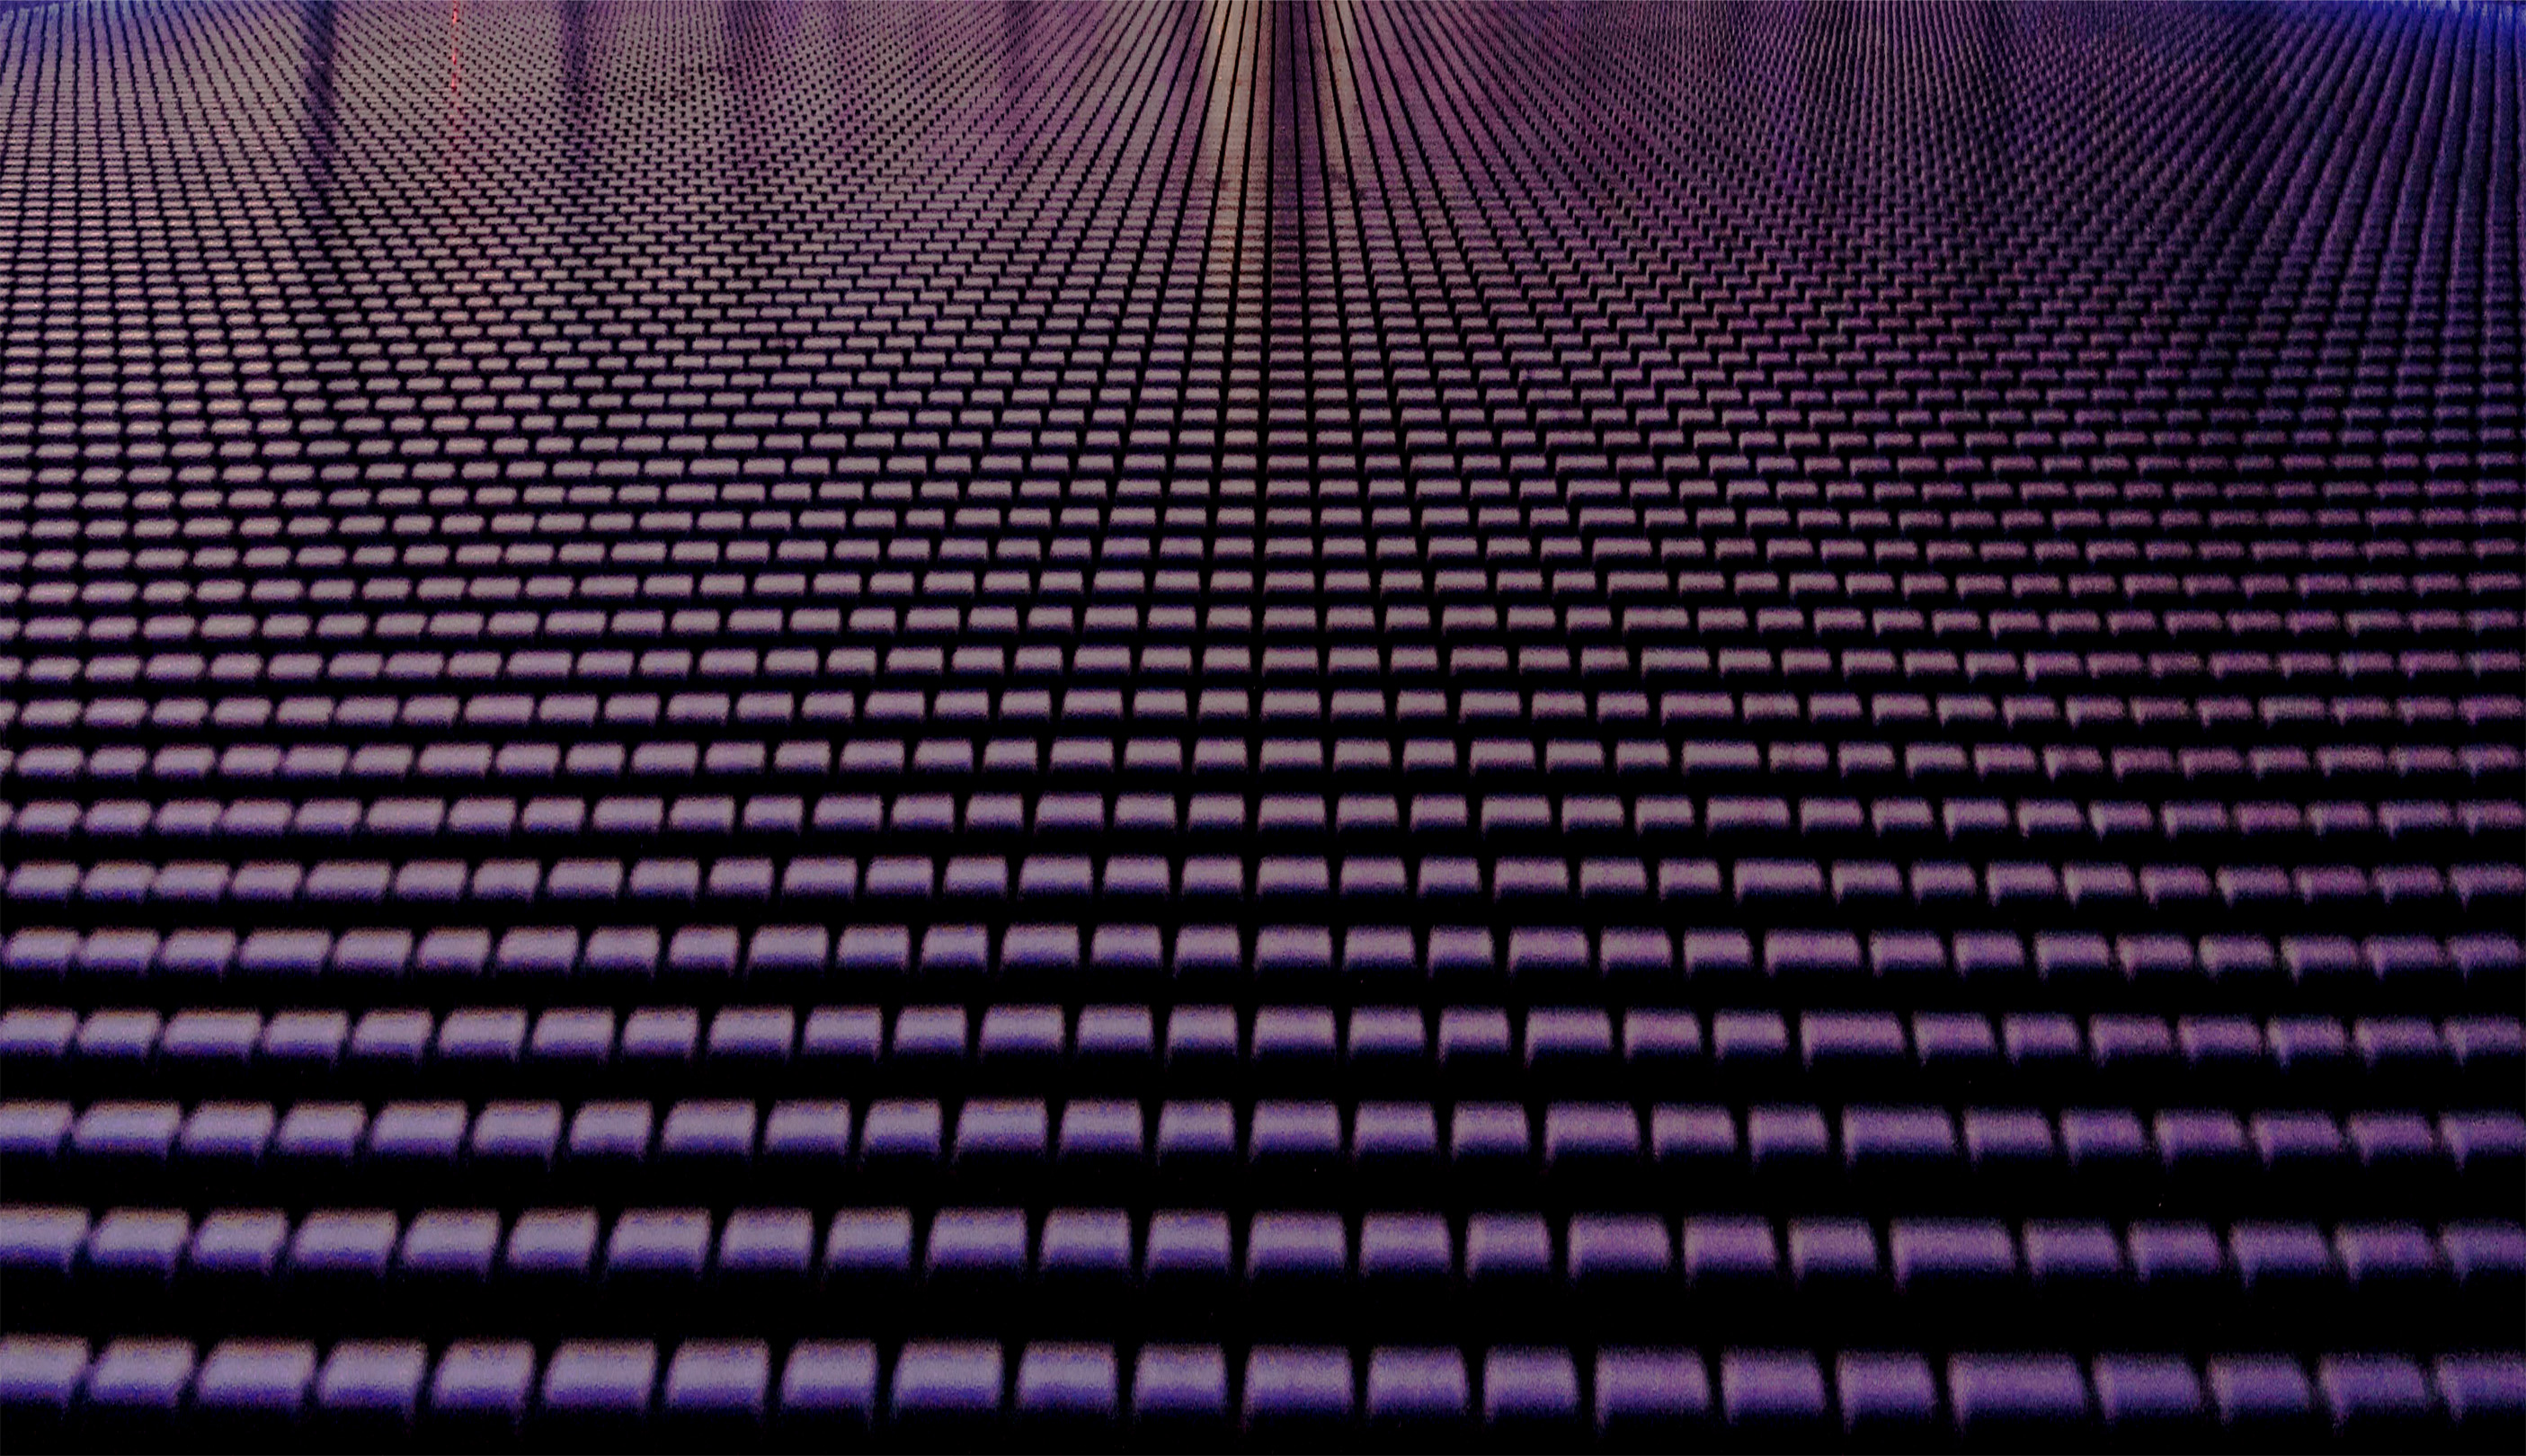 Pattern - millenium bridge floor photo